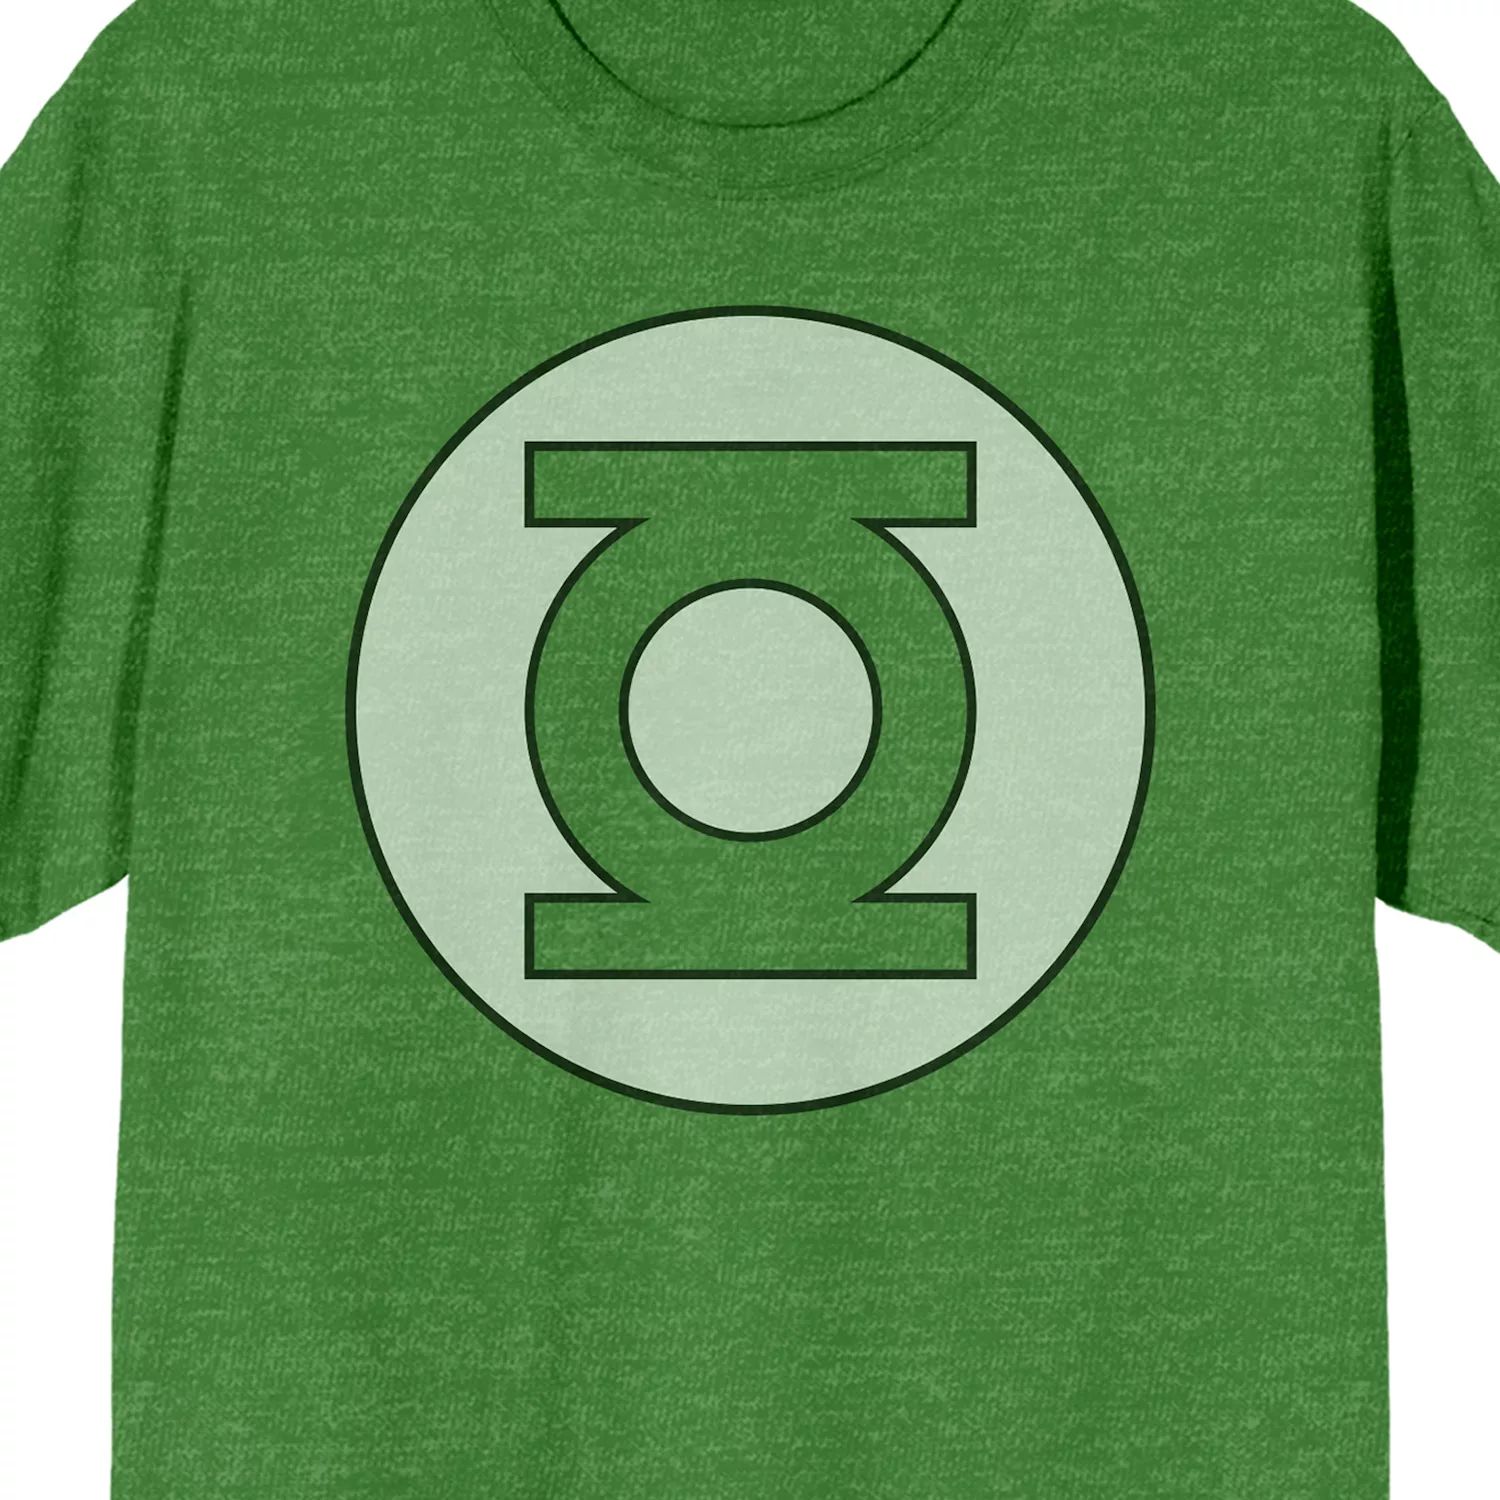 цена Мужская зеленая футболка с логотипом фонаря Licensed Character